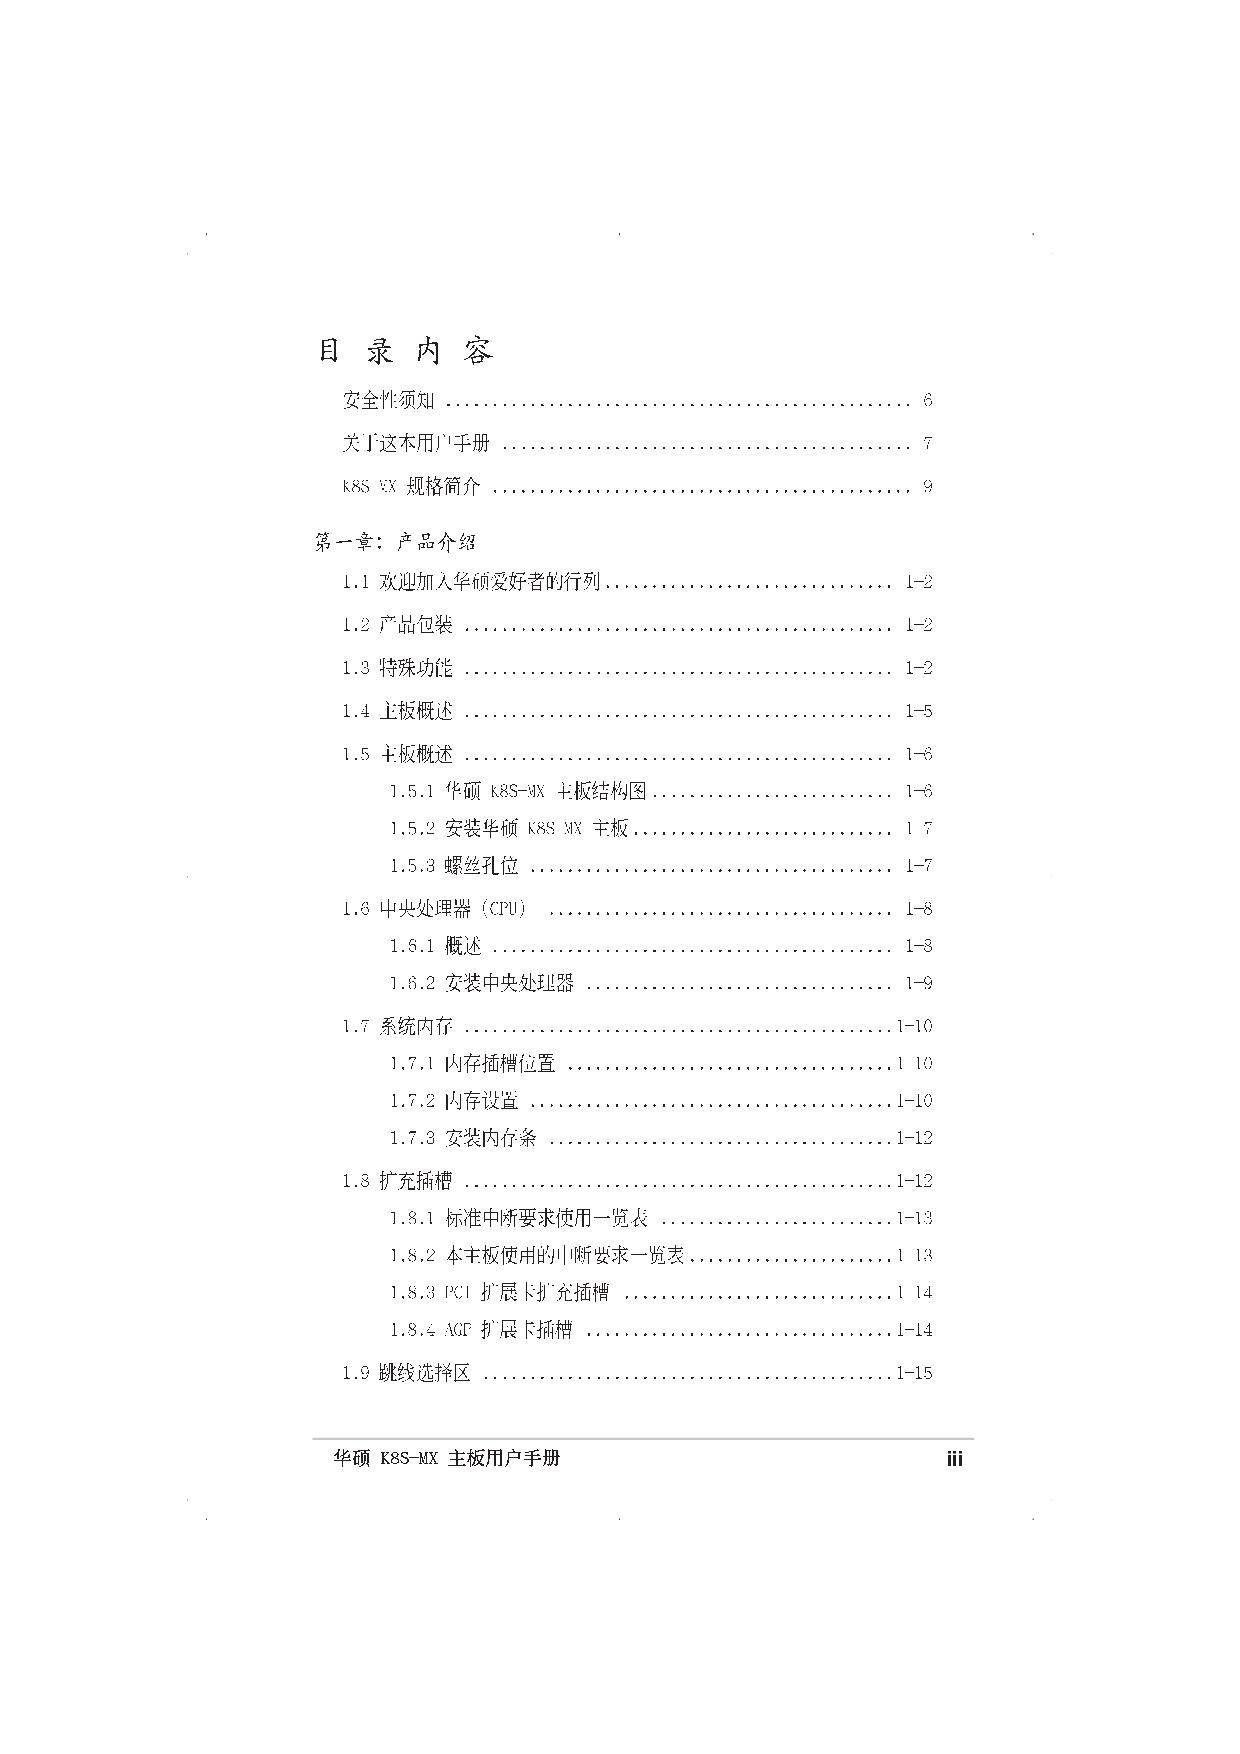 华硕 Asus K8S-MX 用户手册 第2页